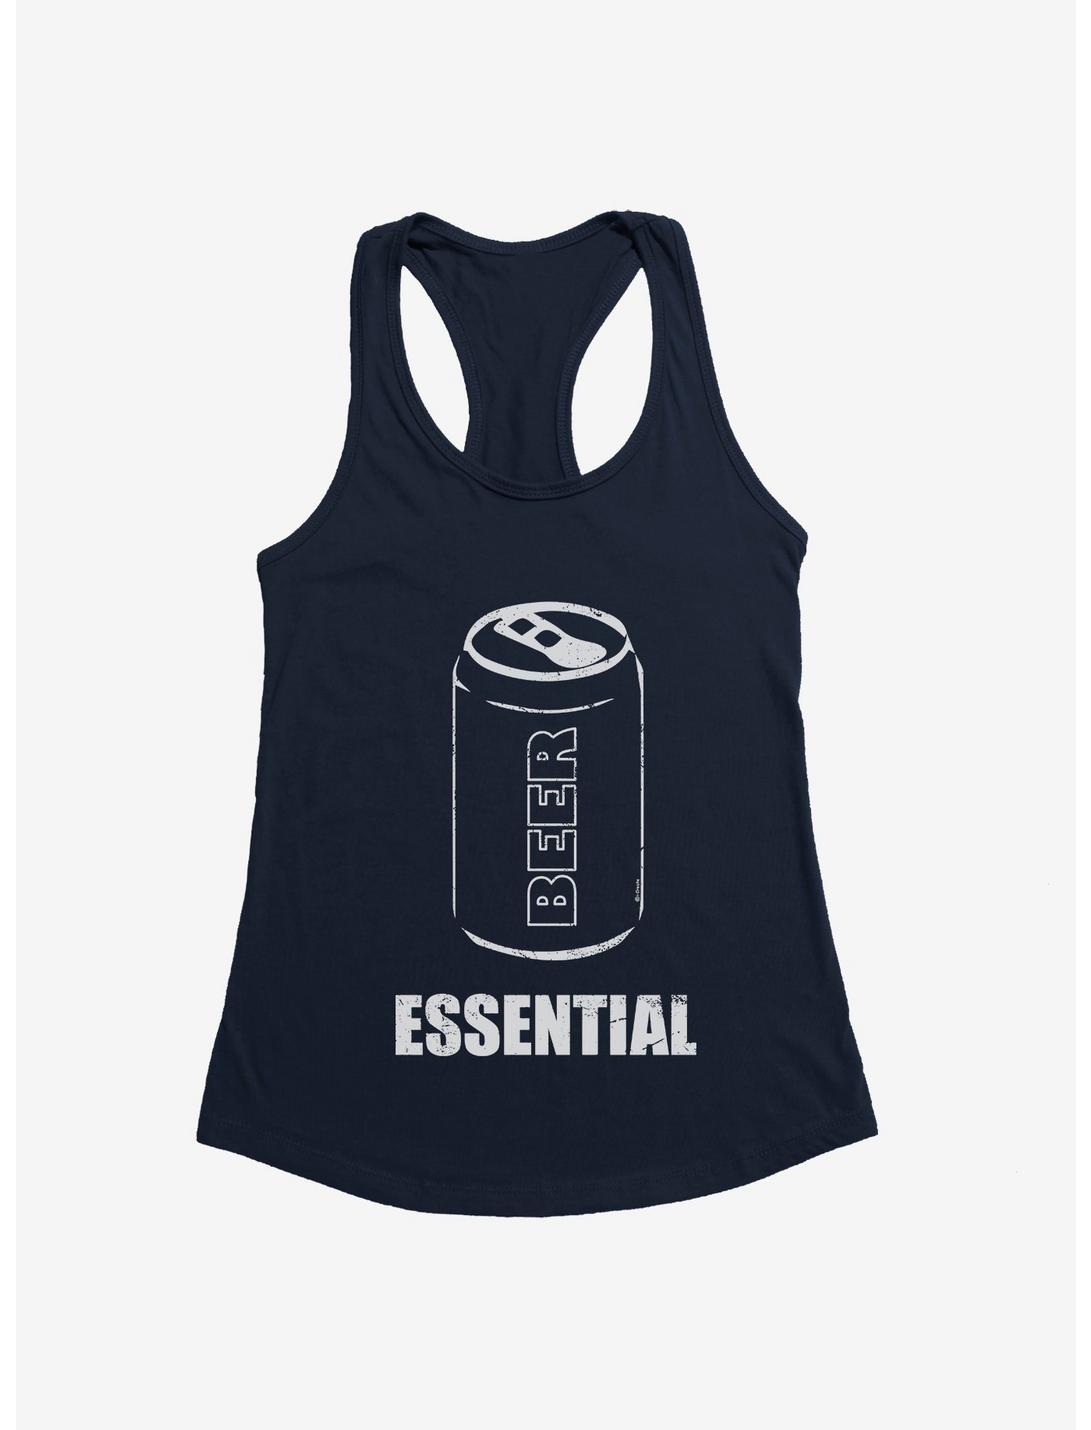 ICreate Beer Essential Girls Tank, , hi-res